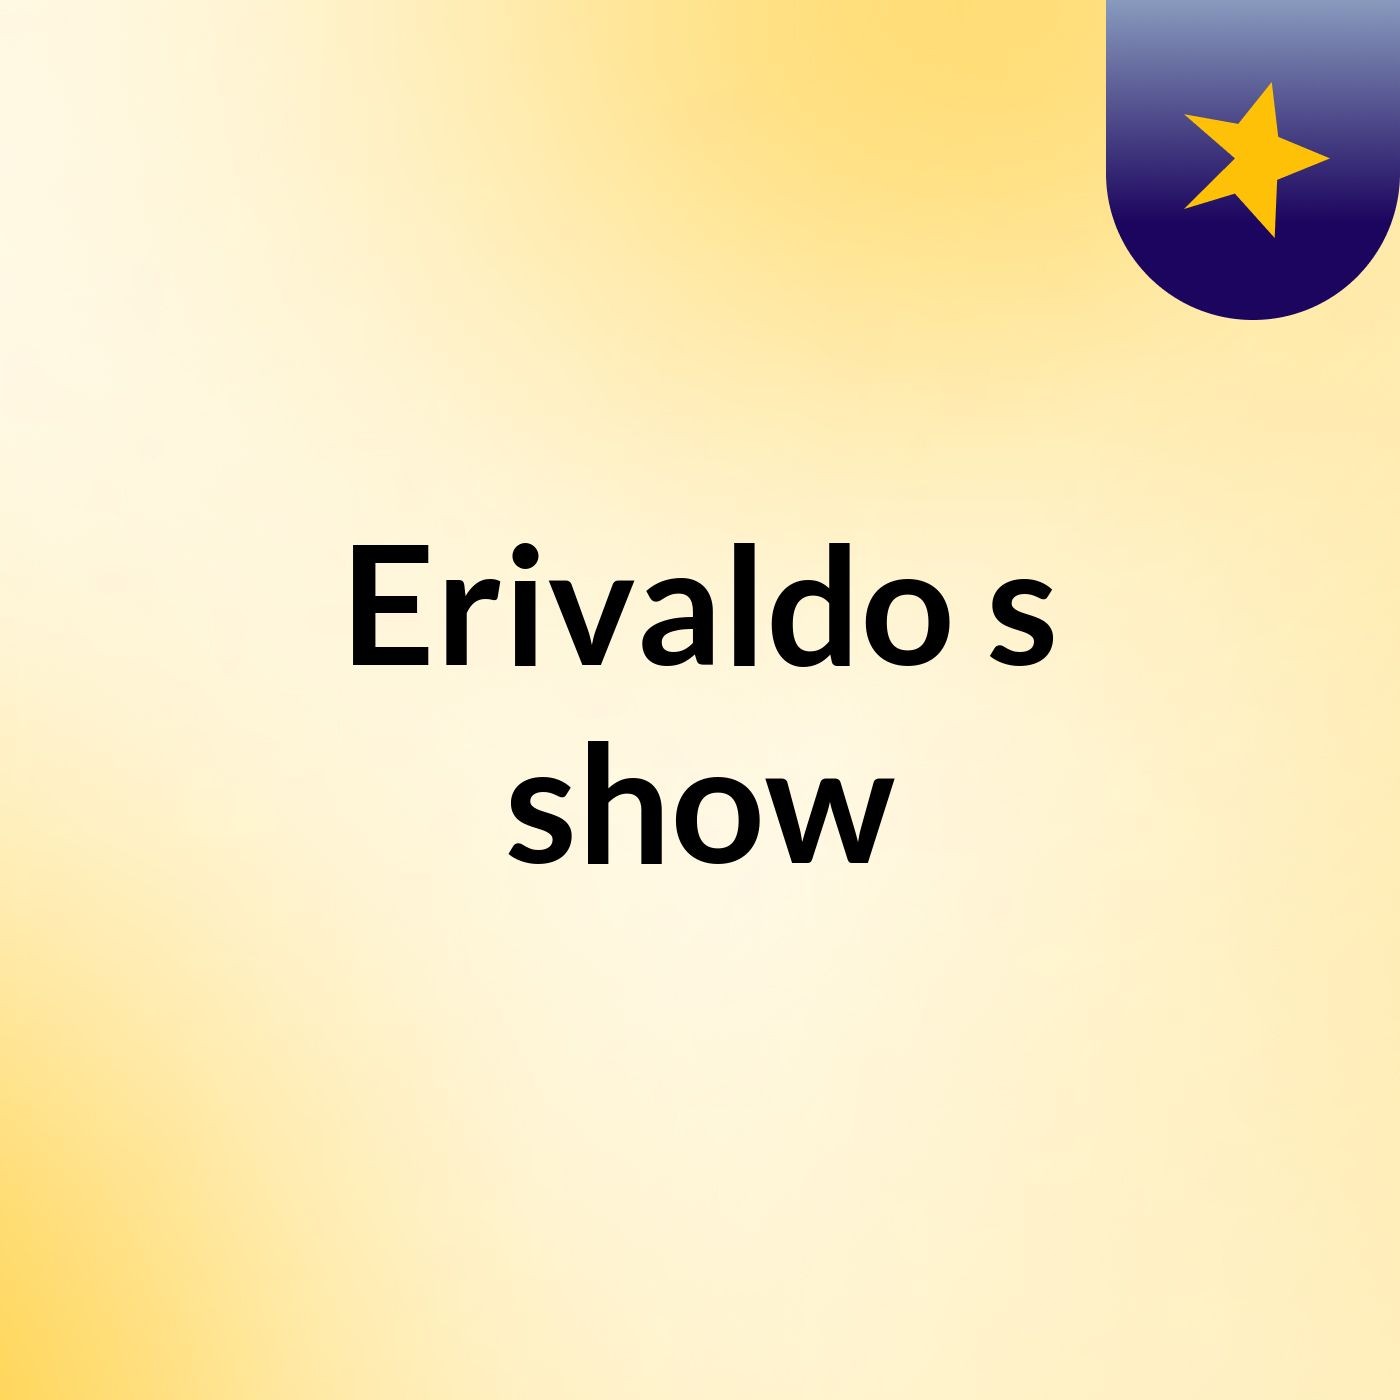 Erivaldo's show